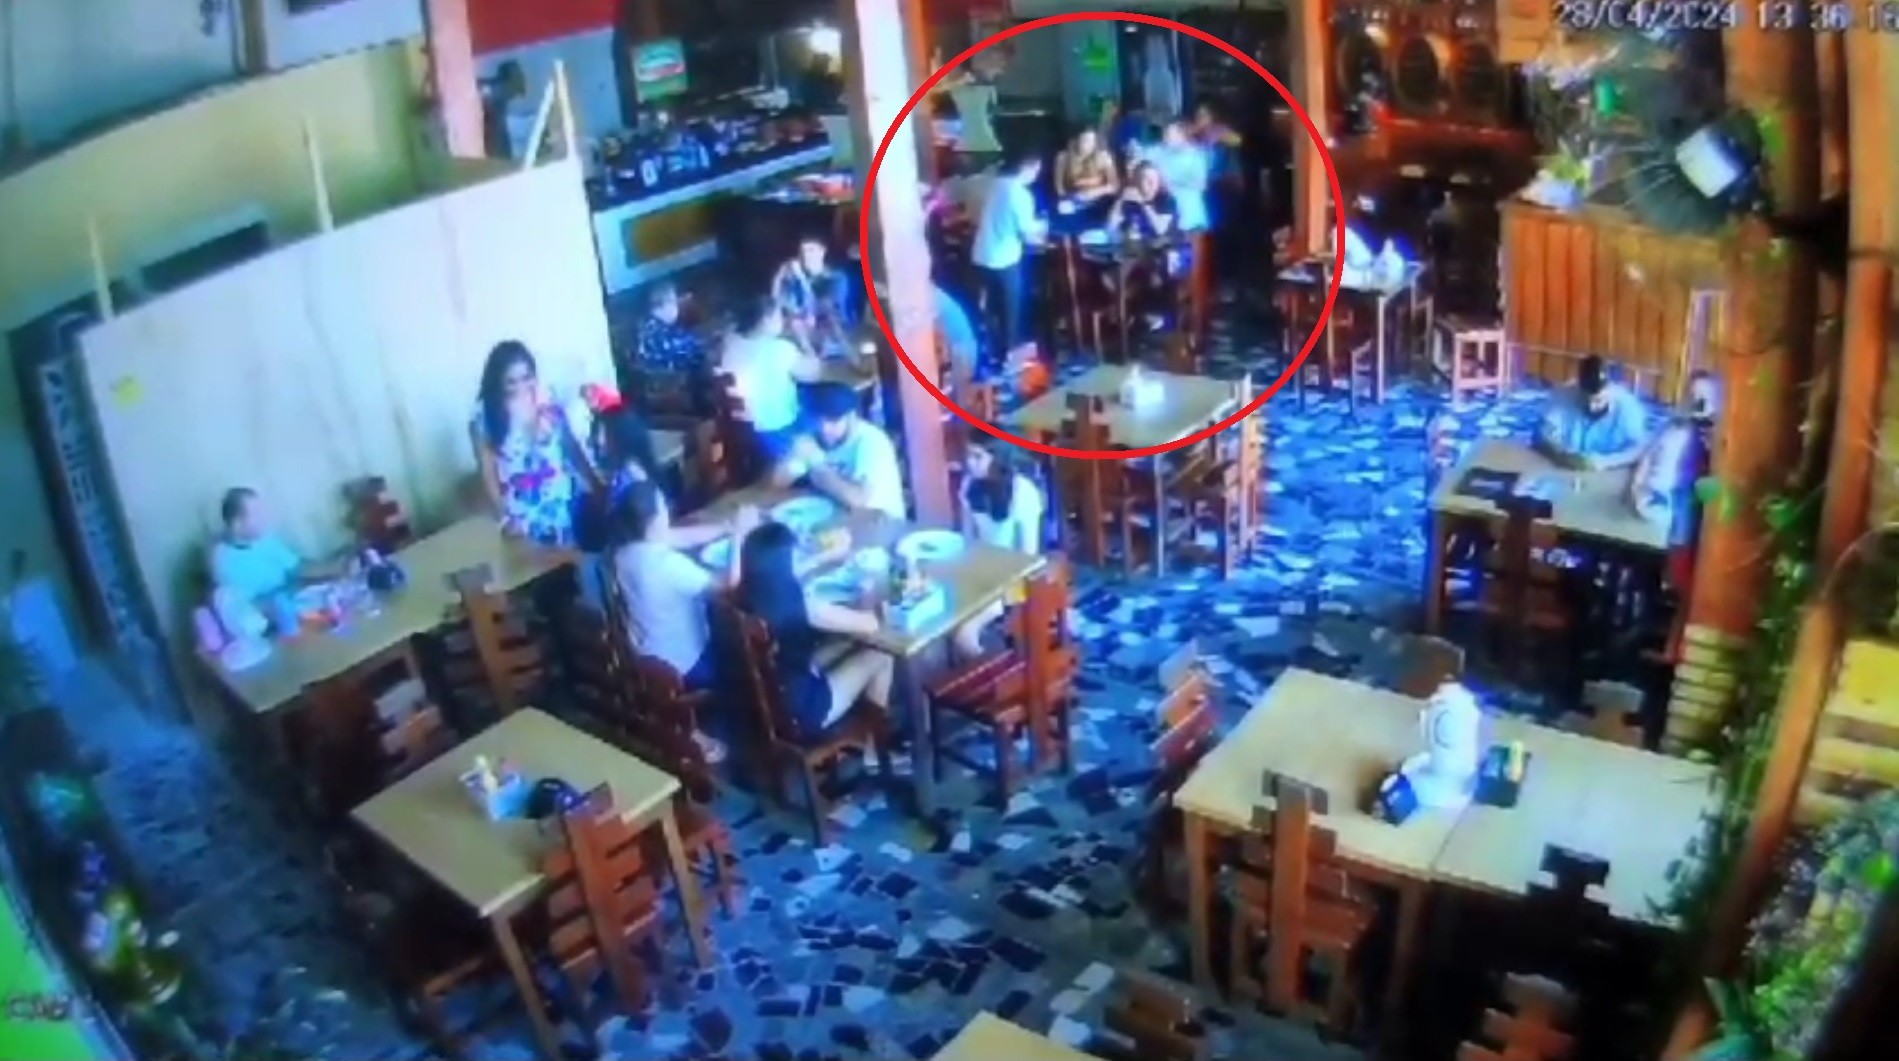 Garçom matou vereador em restaurante motivado por assédio moral no trabalho, diz polícia